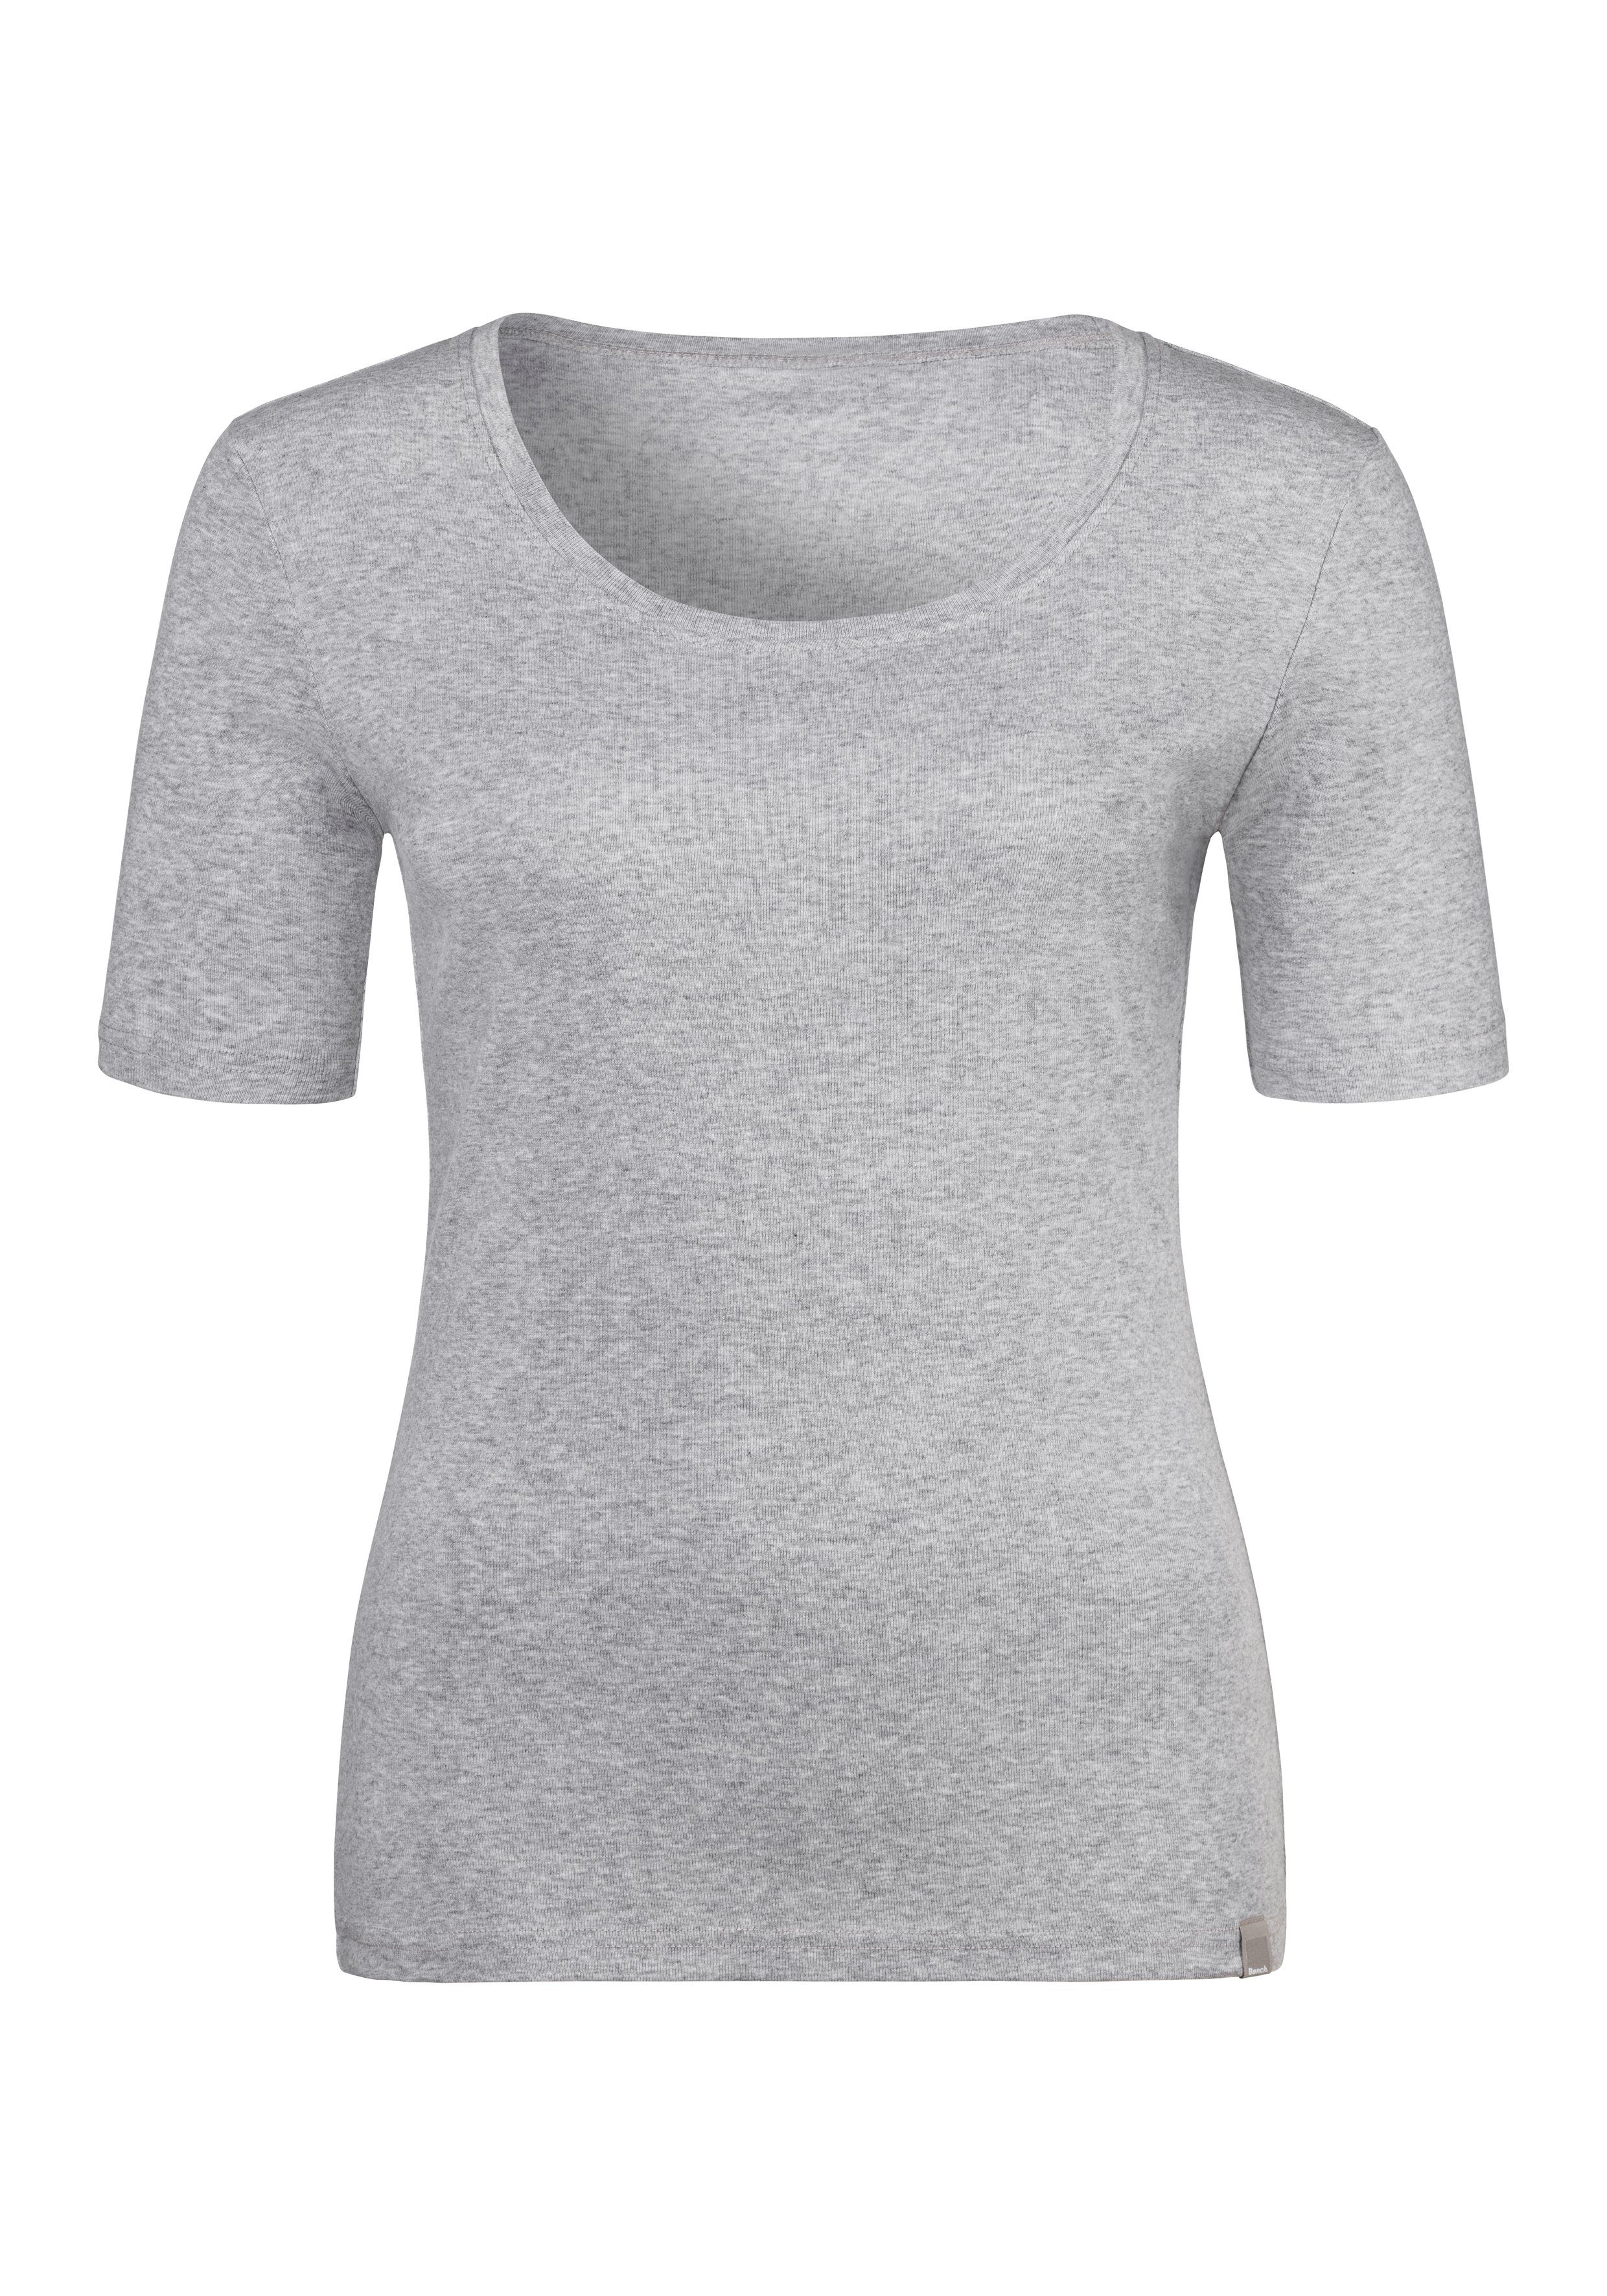 Bench. T-Shirt weicher grau-meliert schwarz, aus (2er-Pack) Unterziehshirt Feinripp-Qualität